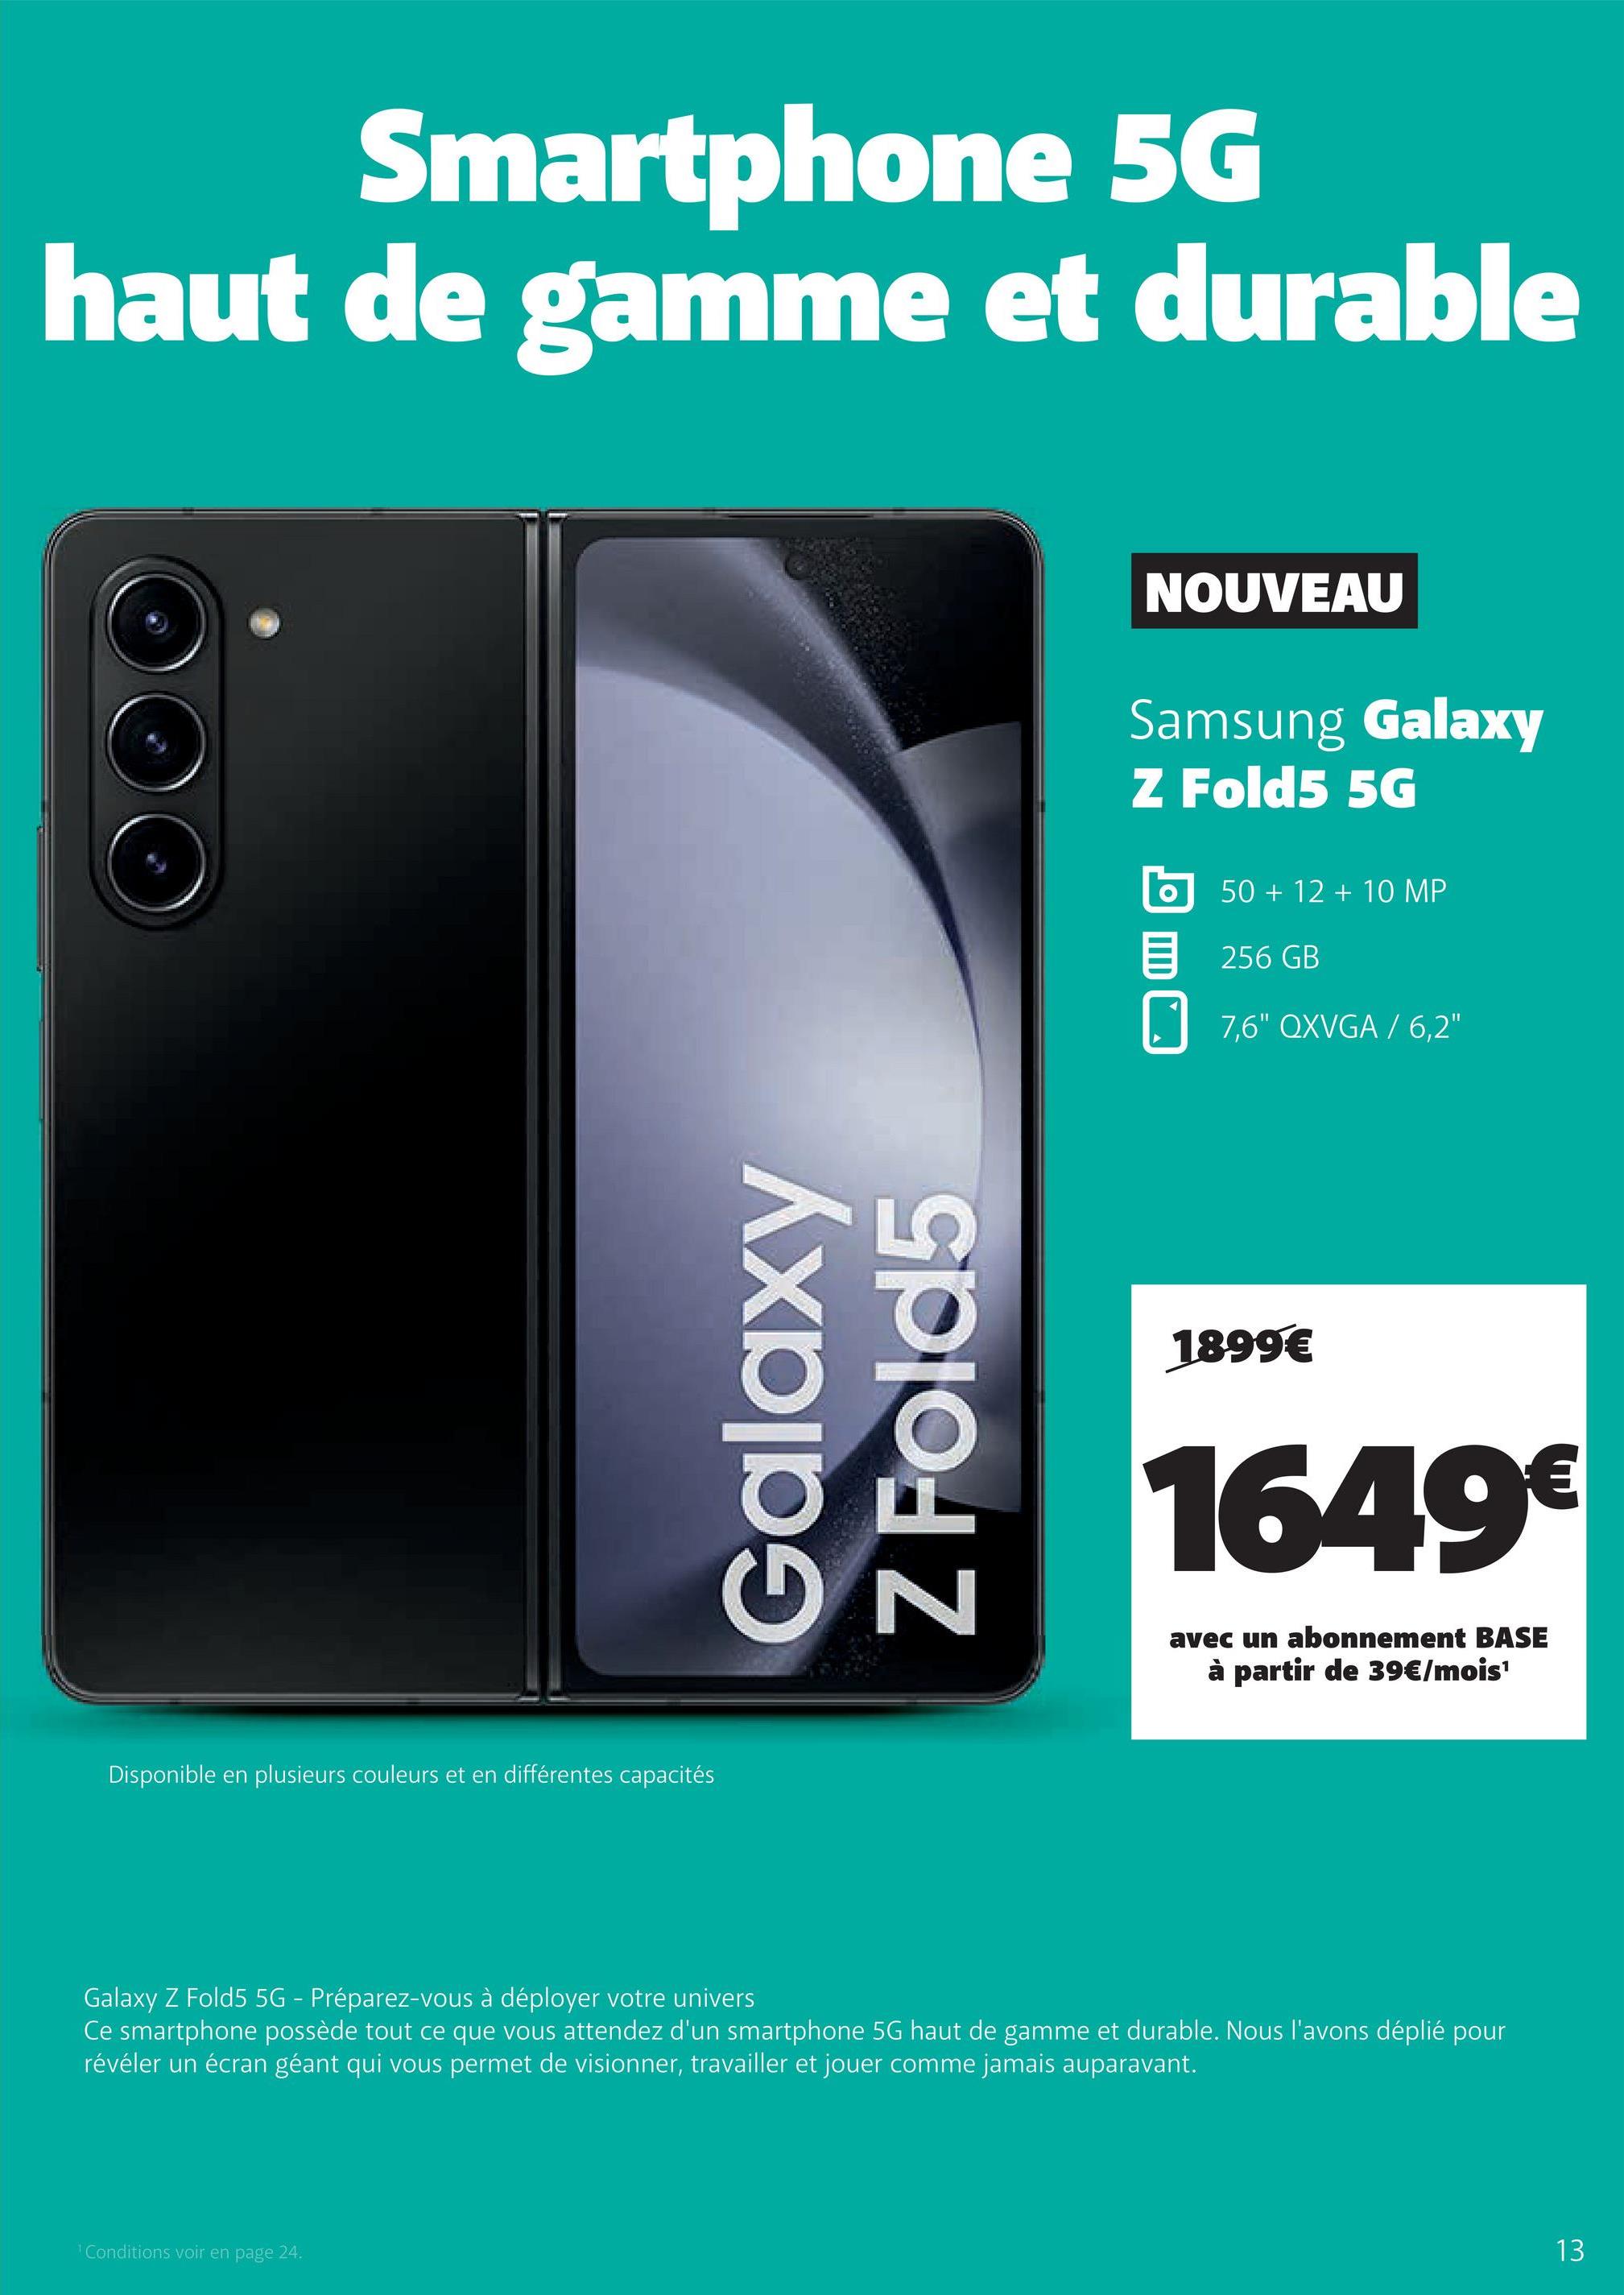 Smartphone 5G
haut de gamme et durable
Disponible en plusieurs couleurs et en différentes capacités
Galaxy
Z Fold5
¹ Conditions voir en page 24.
NOUVEAU
Samsung Galaxy
Z Fold5 5G
50 + 12 + 10 MP
256 GB
7,6" QXVGA / 6,2"
1899€
1649€
avec un abonnement BASE
à partir de 39€/mois¹
Galaxy Z Fold5 5G - Préparez-vous à déployer votre univers
Ce smartphone possède tout ce que vous attendez d'un smartphone 5G haut de gamme et durable. Nous l'avons déplié pour
révéler un écran géant qui vous permet de visionner, travailler et jouer comme jamais auparavant.
13